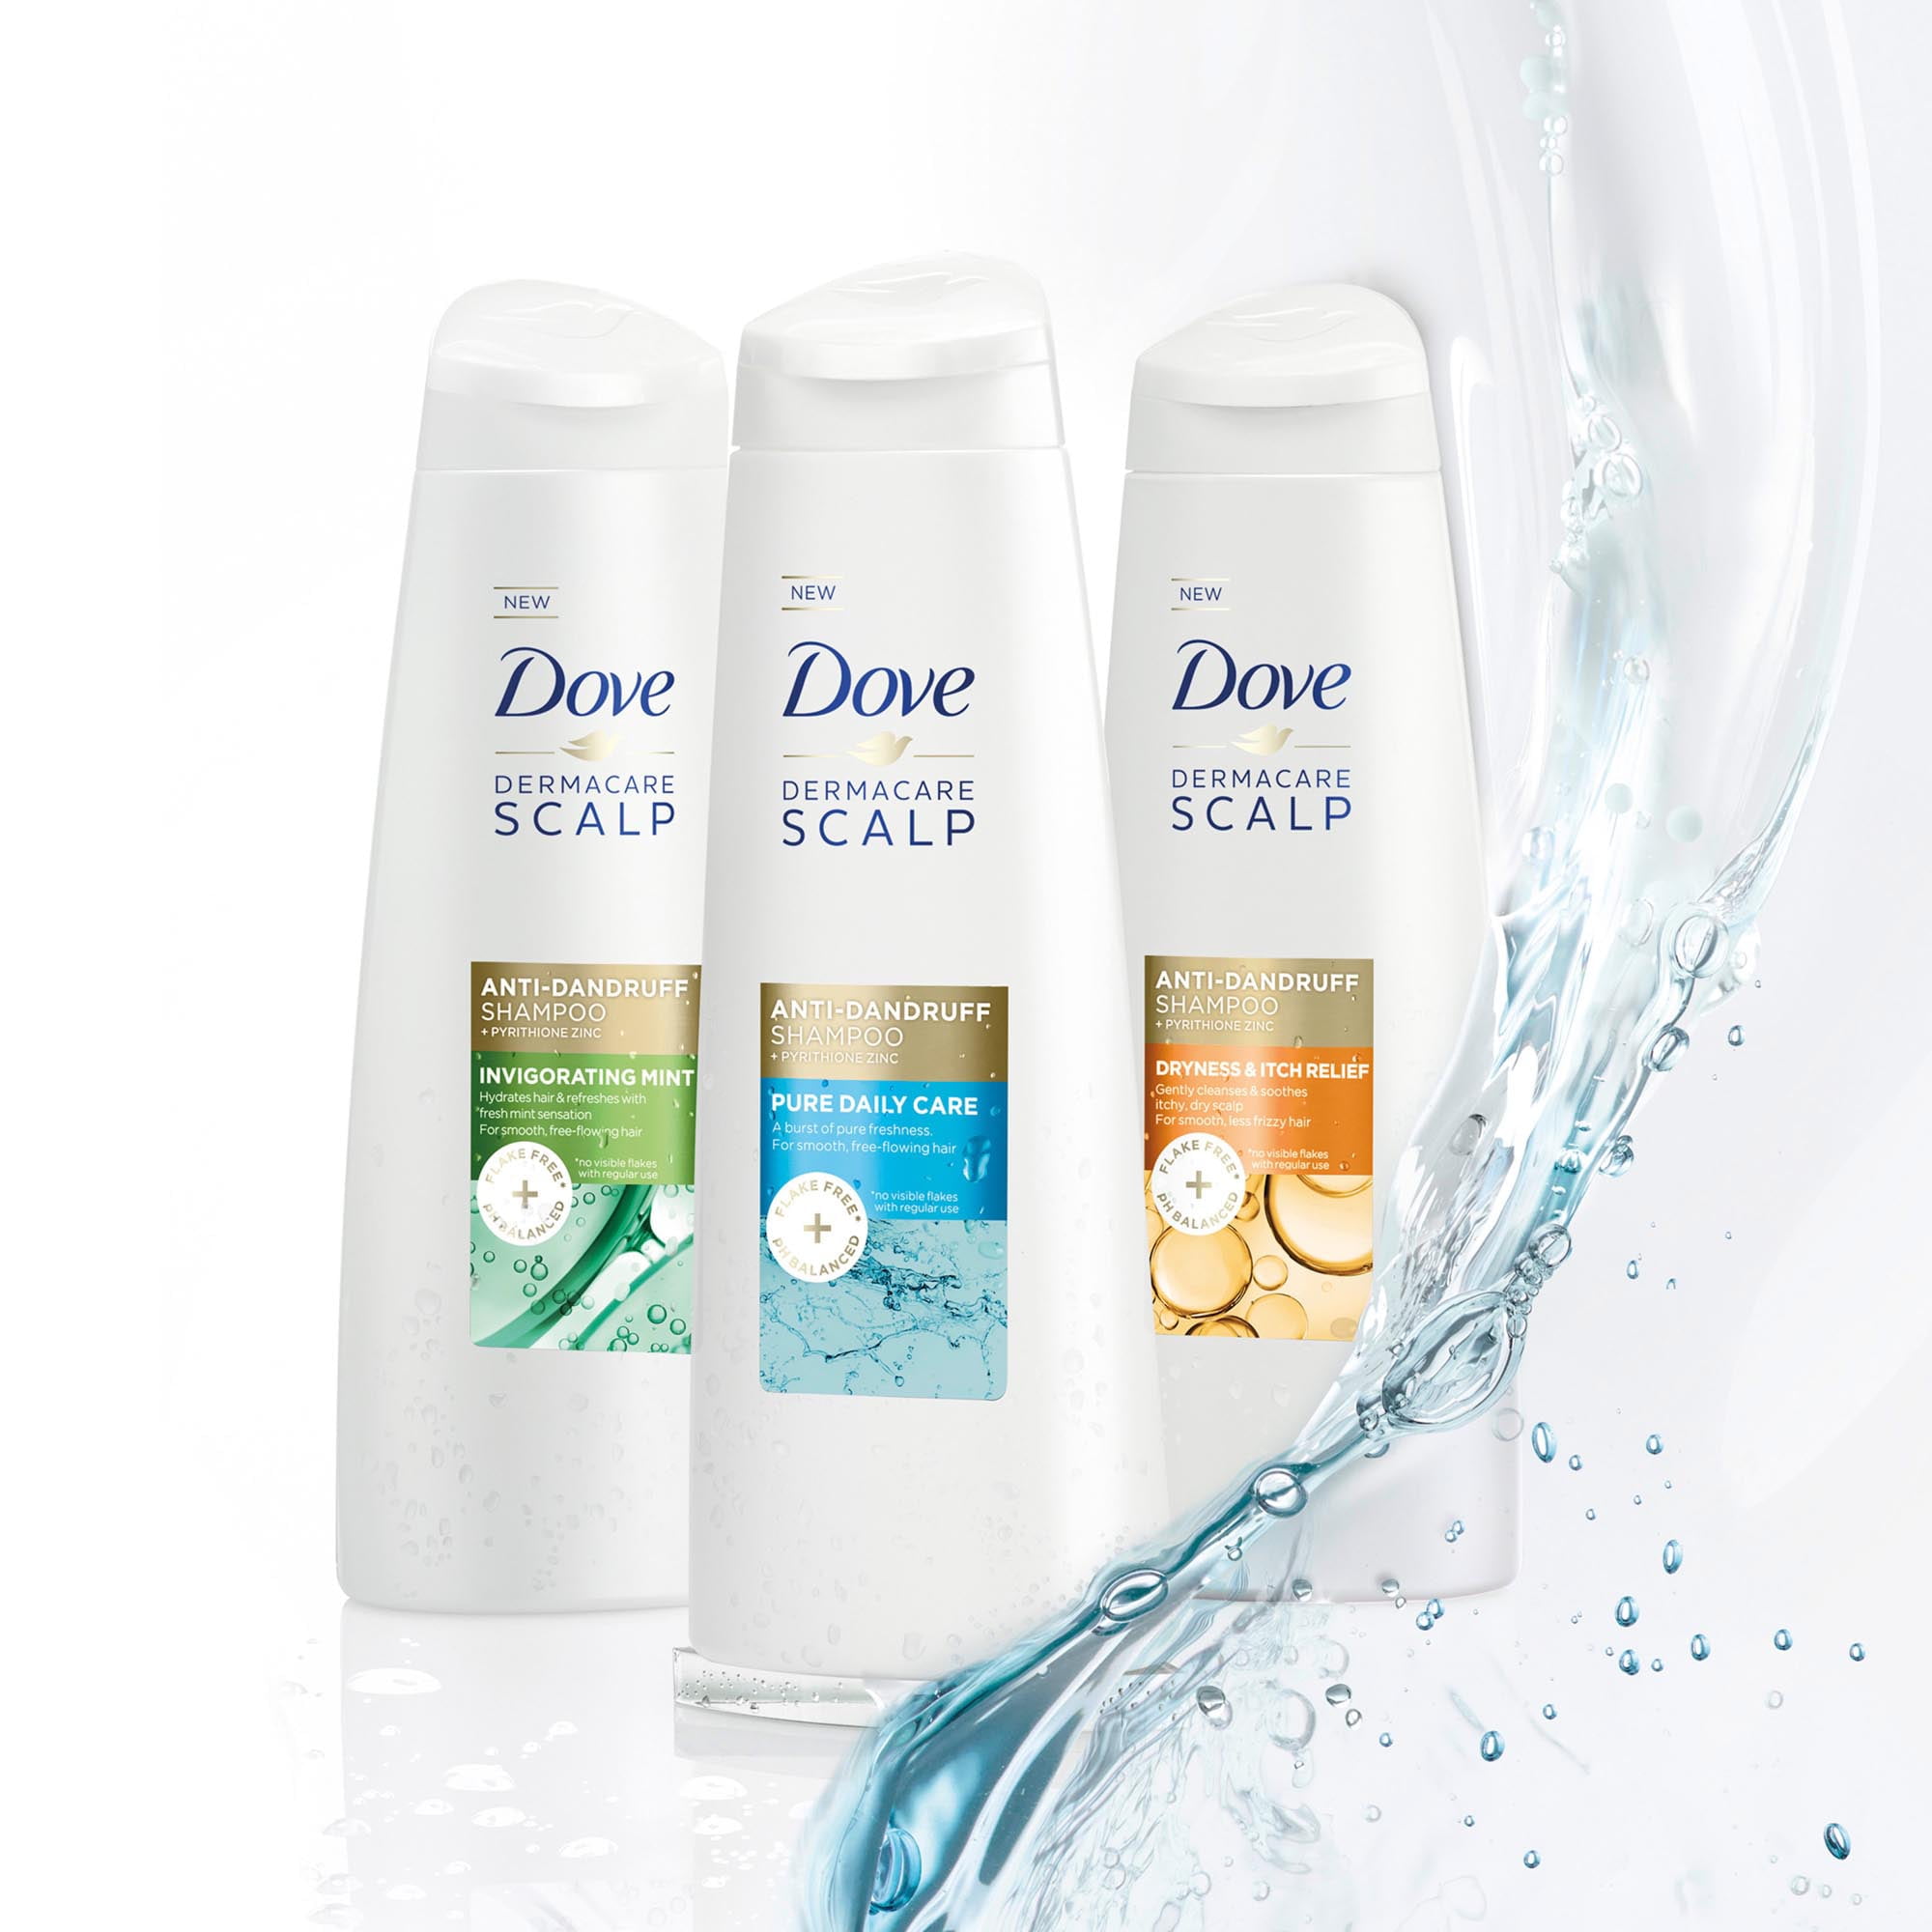 Dove Dermacare Scalp Anti Dandruff Daily Shampoo with Pyrithione Zinc, 12  fl oz